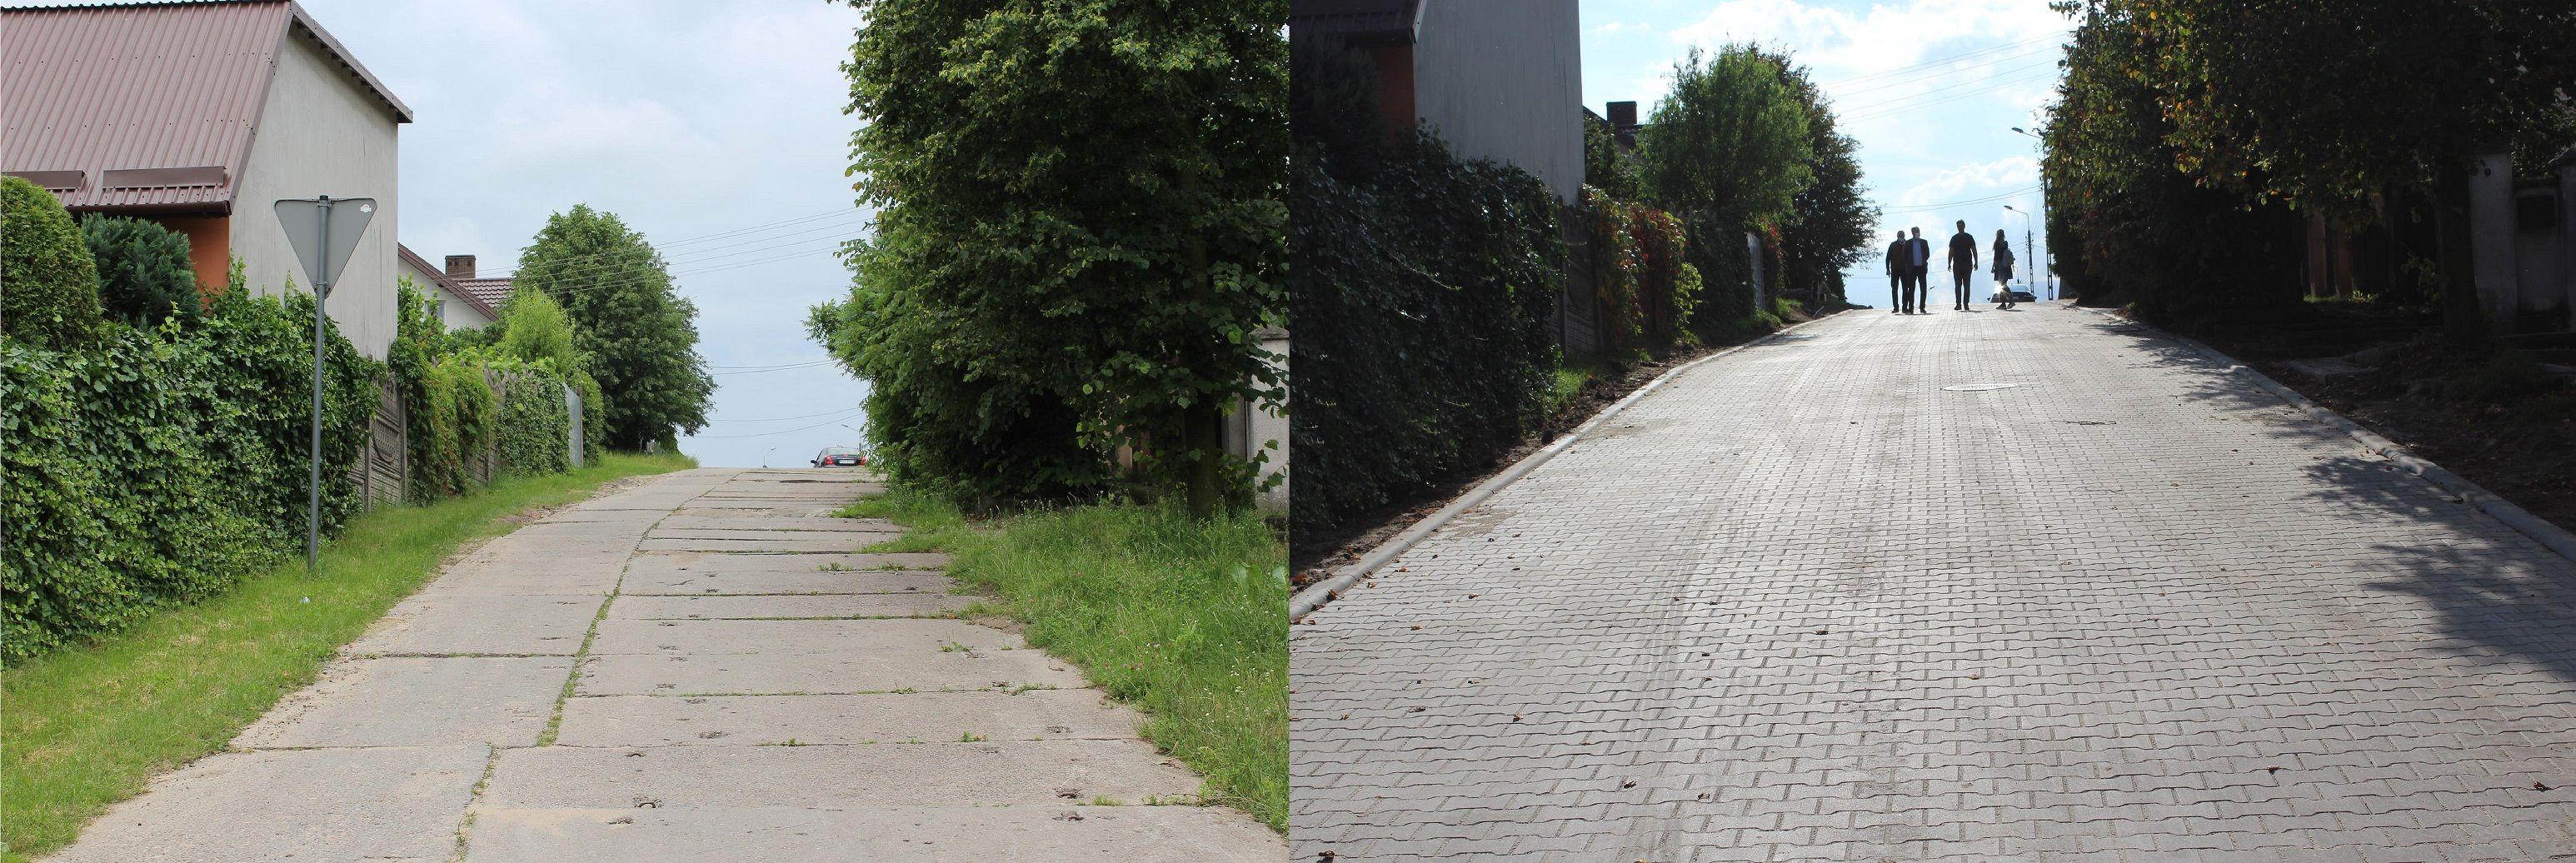 Przebudowa ulicy Olszowej w Lipnie, stan sprzed i po remoncie - kliknięcie spowoduje powiększenie obrazka